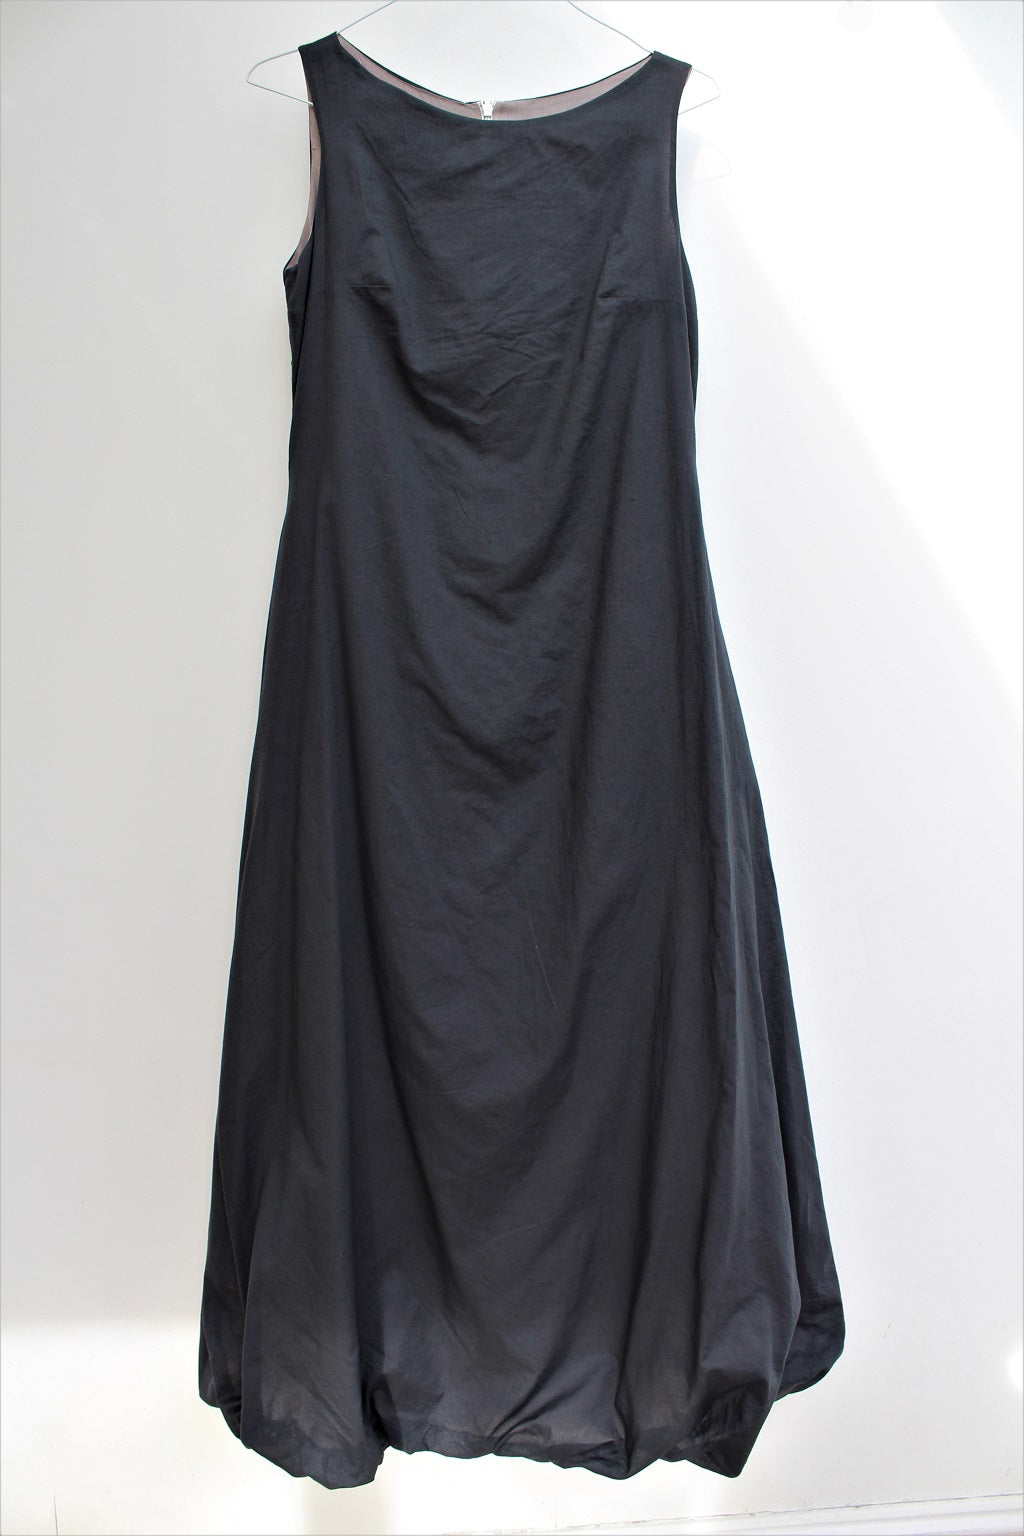 Cloud - long cotton dress, with bubble hem